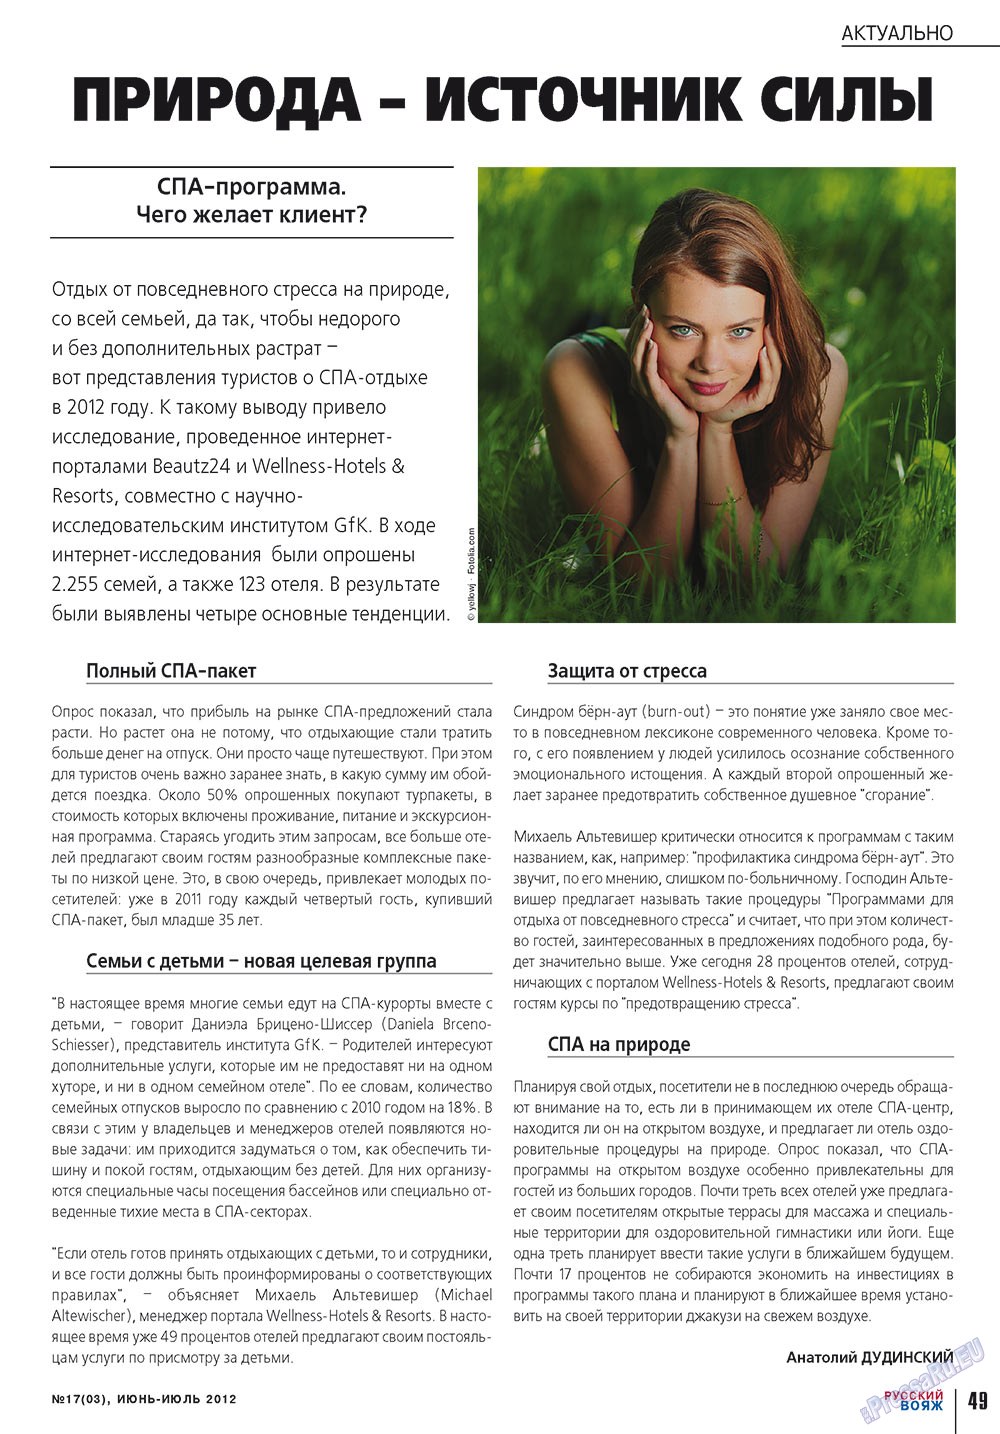 Русский вояж (журнал). 2012 год, номер 17, стр. 49